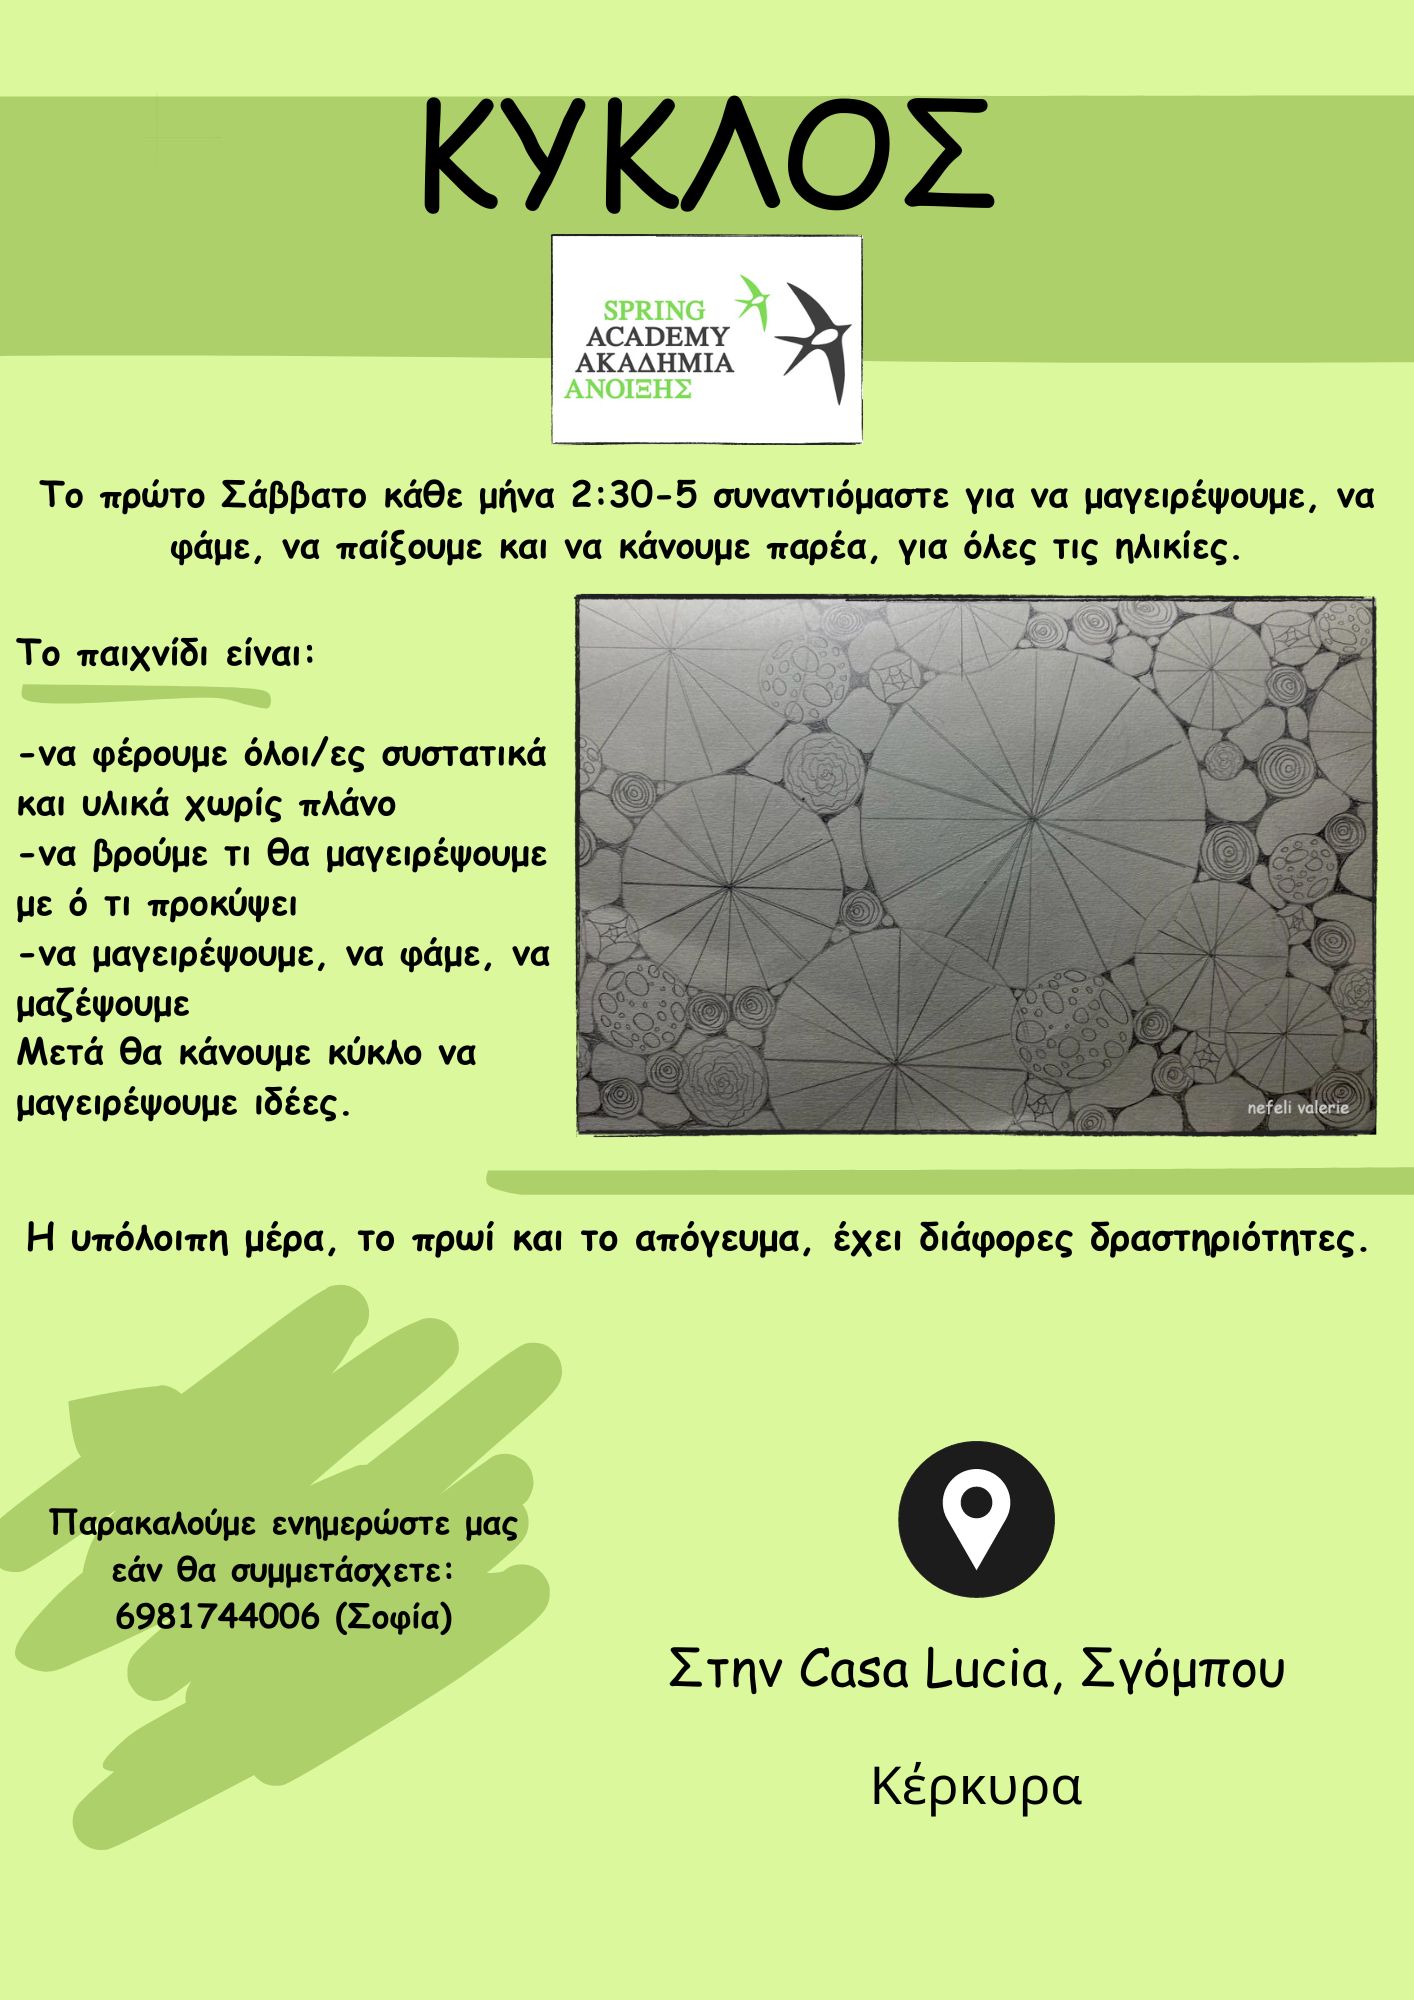 αφίσα με περιγραφή για δραστηριότητα Κύκλου